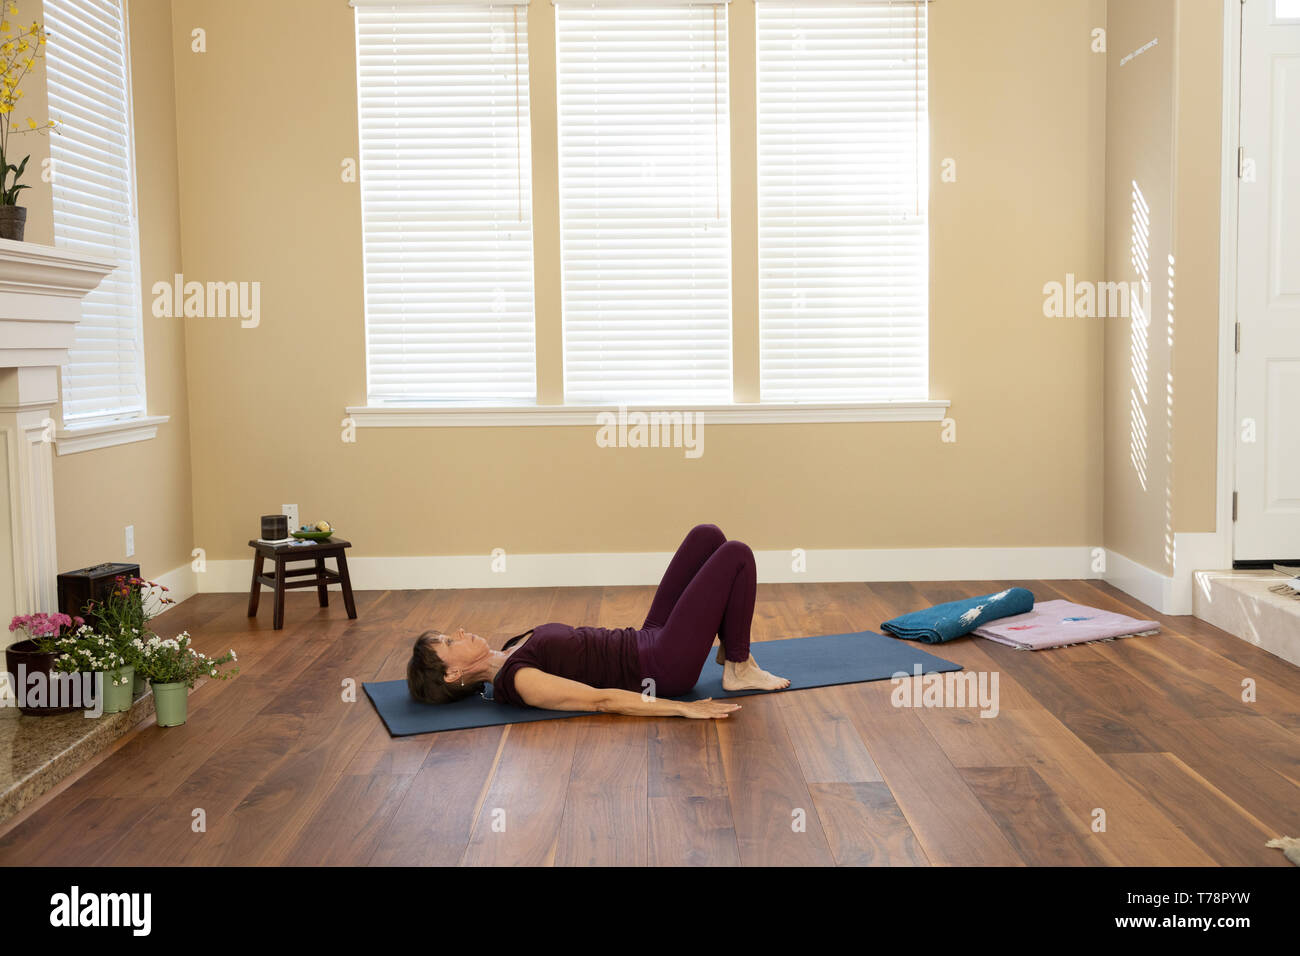 Yoga pose les genoux pliés les bras tendus sur les côtés Banque D'Images